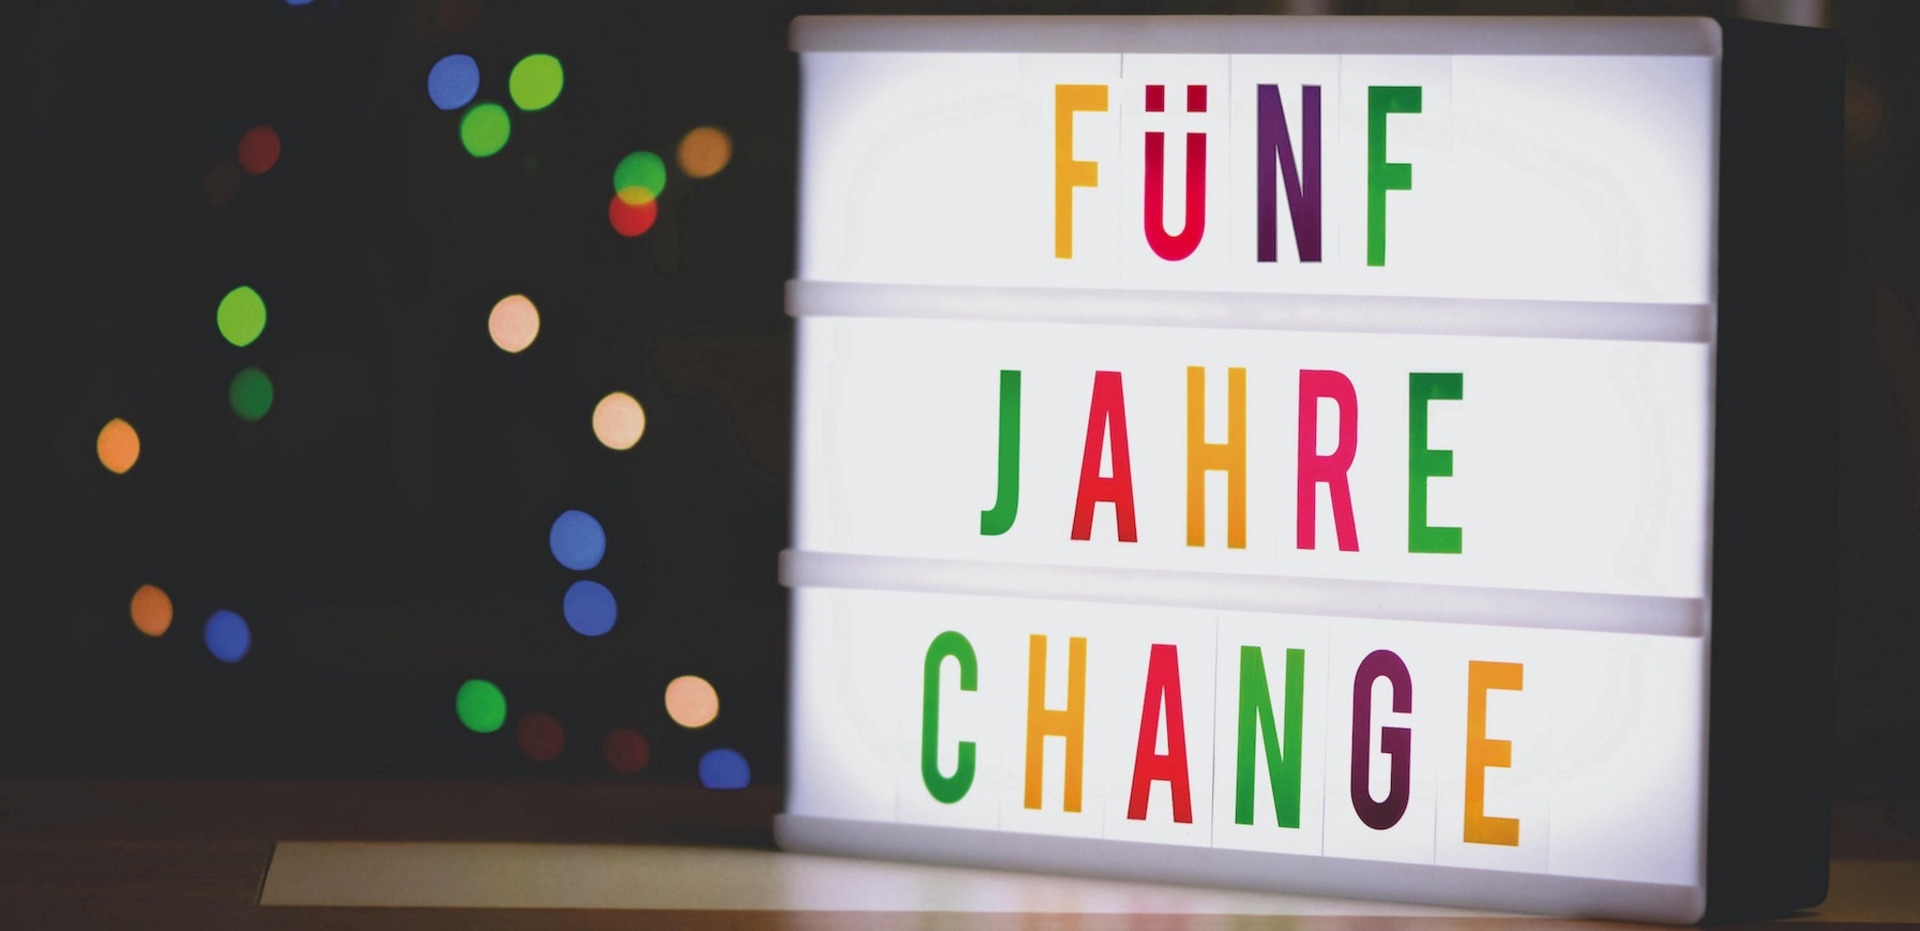 Ein Foto eines Leuchtkastens, in dem mit bunten Buchstaben steht "FÜNF JAHRE CHANGE".